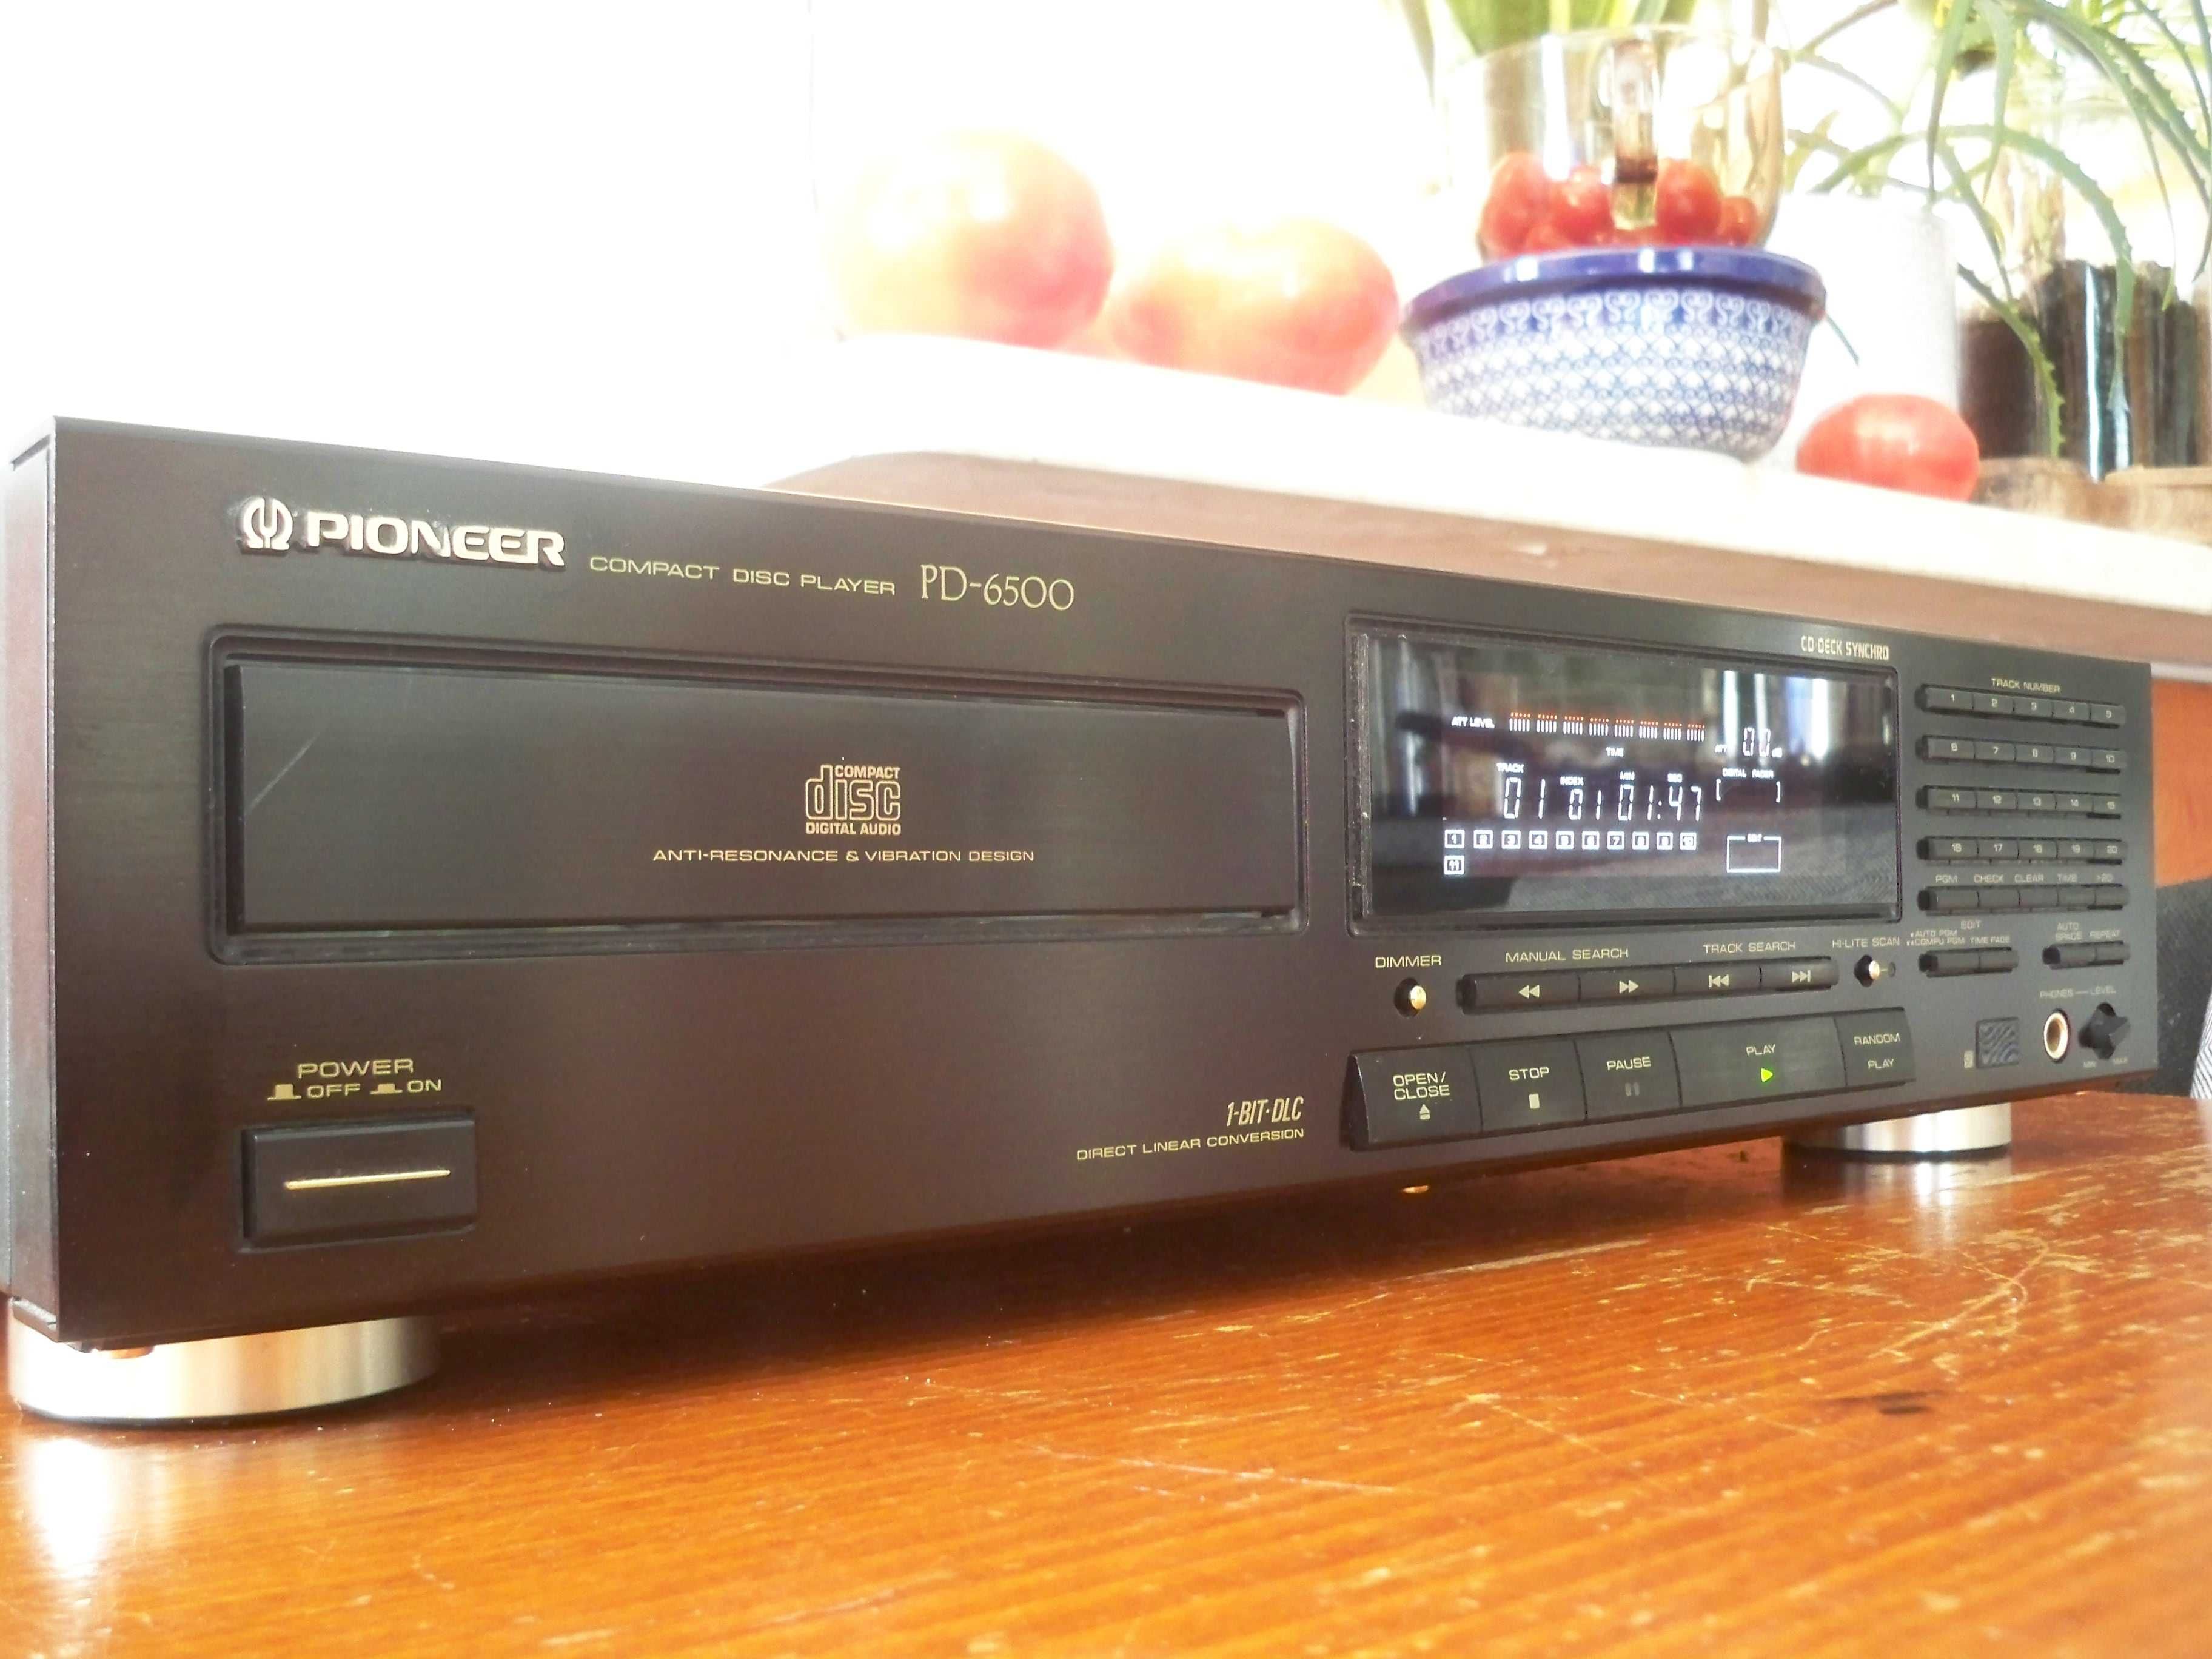 odtwarzacz CD Pioneer PD-6500, poprzednik PD-7700